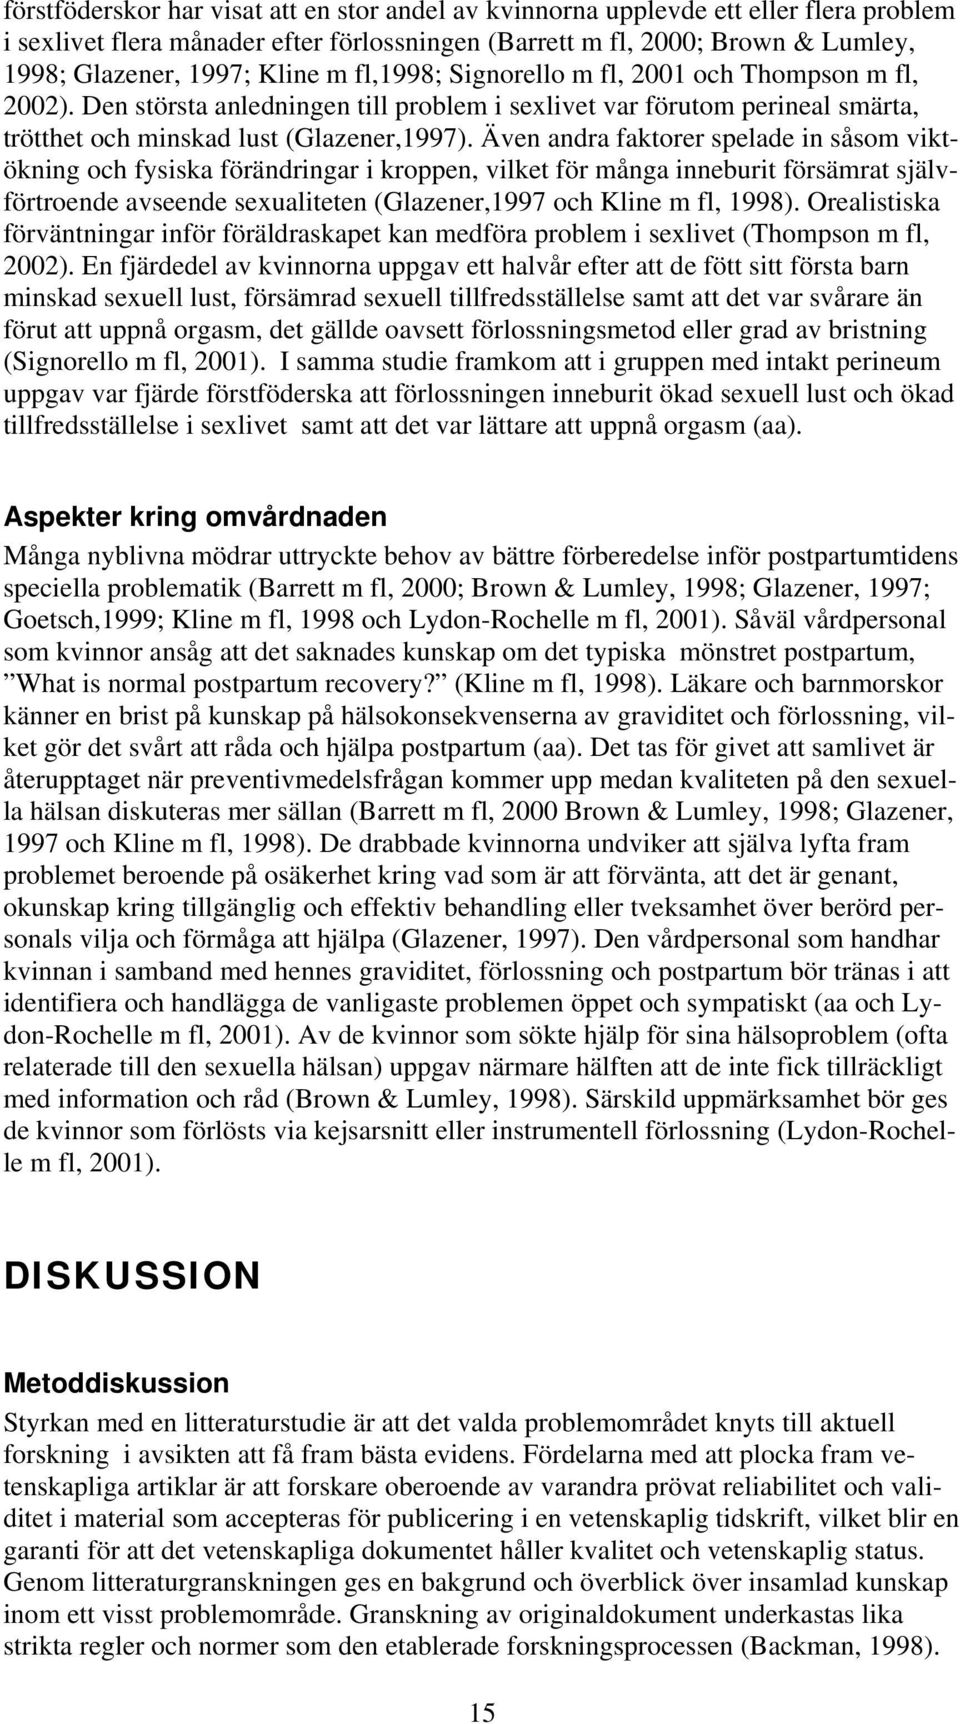 Även andra faktorer spelade in såsom viktökning och fysiska förändringar i kroppen, vilket för många inneburit försämrat självförtroende avseende sexualiteten (Glazener,1997 och Kline m fl, 1998).